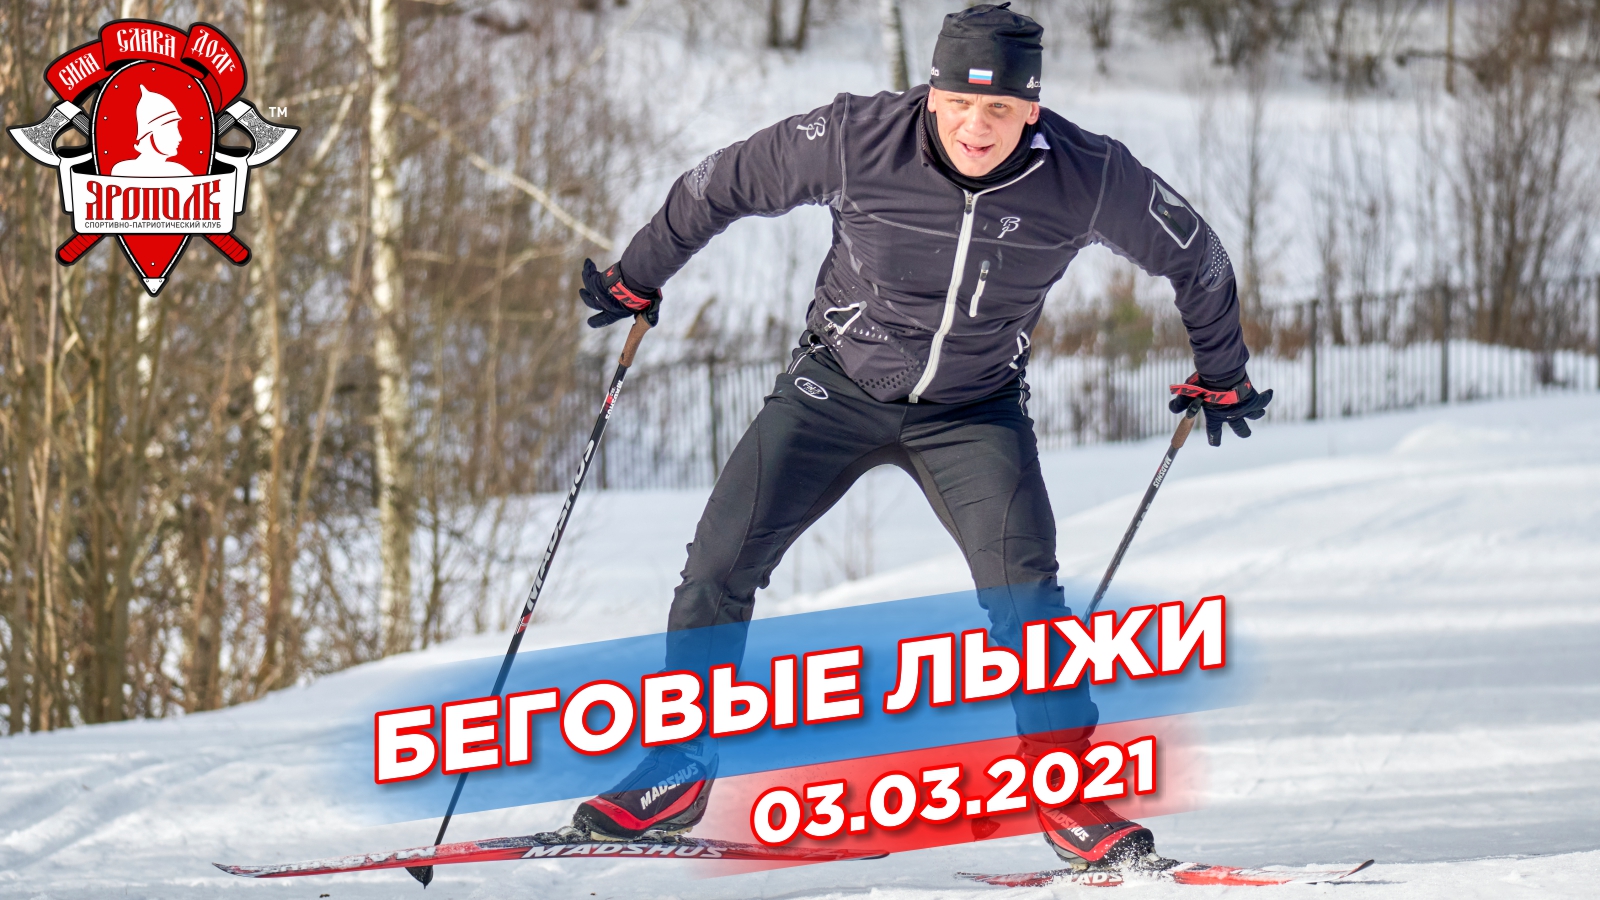 Тренировка на беговых лыжах, депутат Шадриков И.С., клуб ЯРОПОЛК, город Красногорск